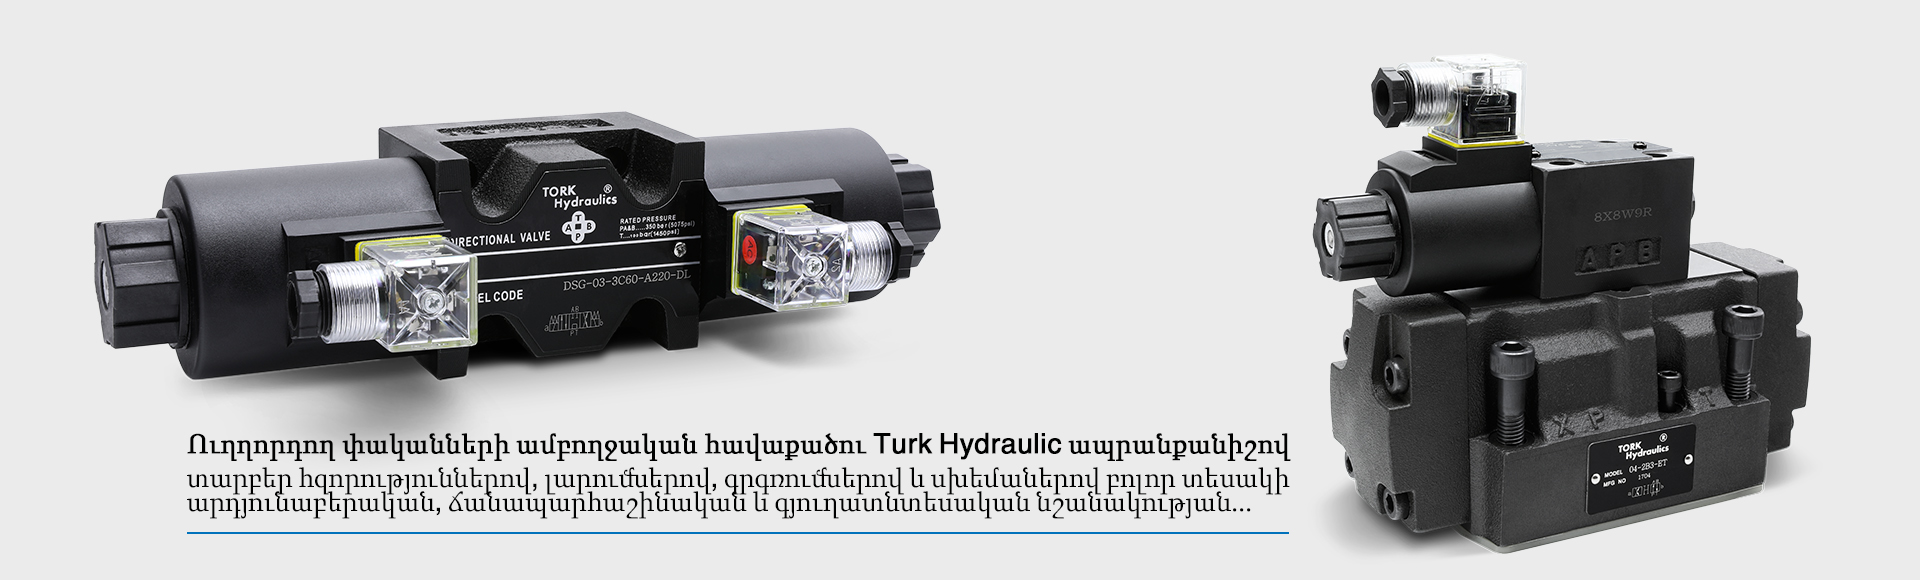 پرشر سوئیچ طرح قدیم ترک هیدرولیکHED10A20-350 TORK-hydraulics